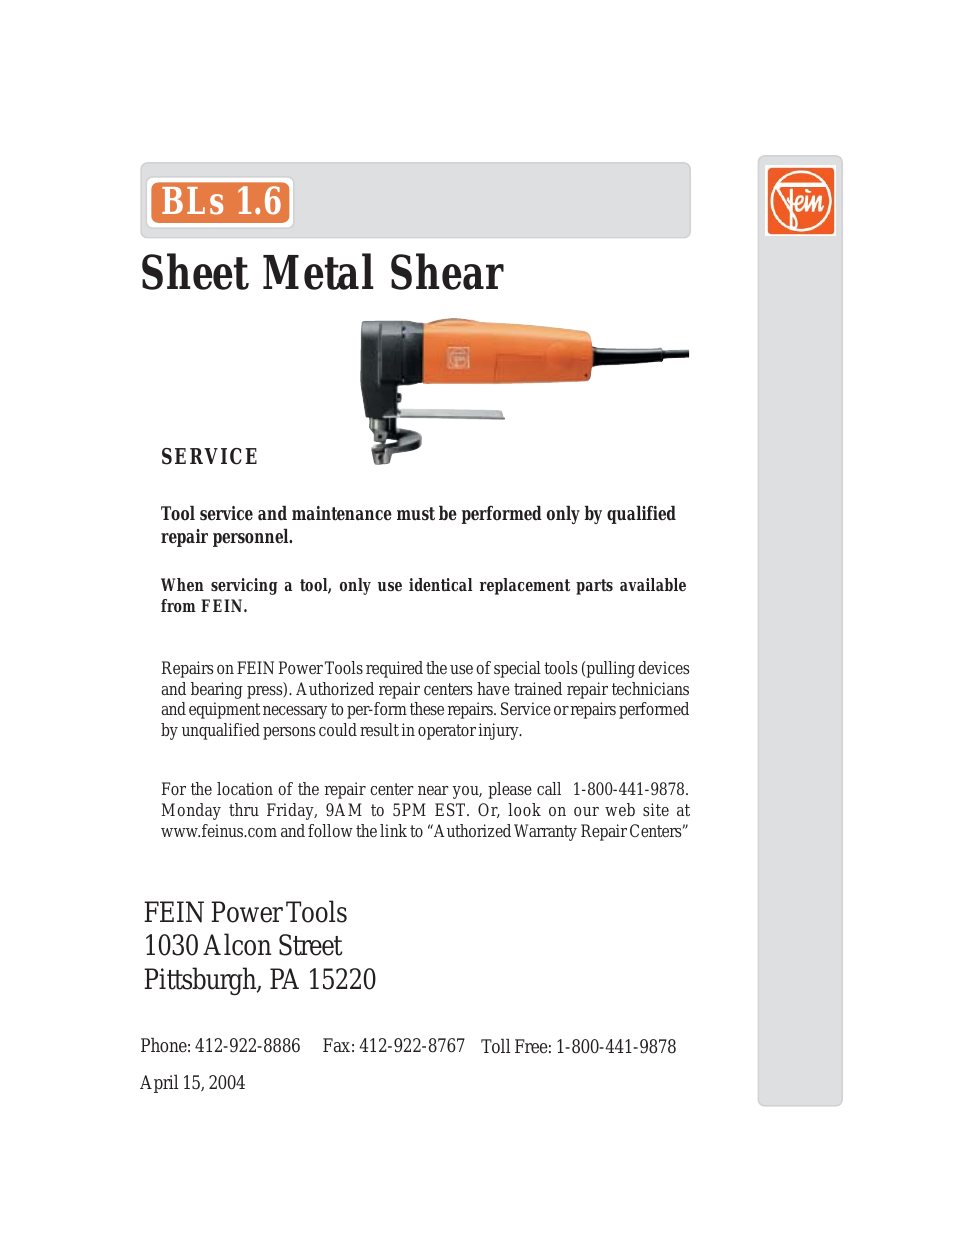 Sheet Metal Shear BLs 1.6